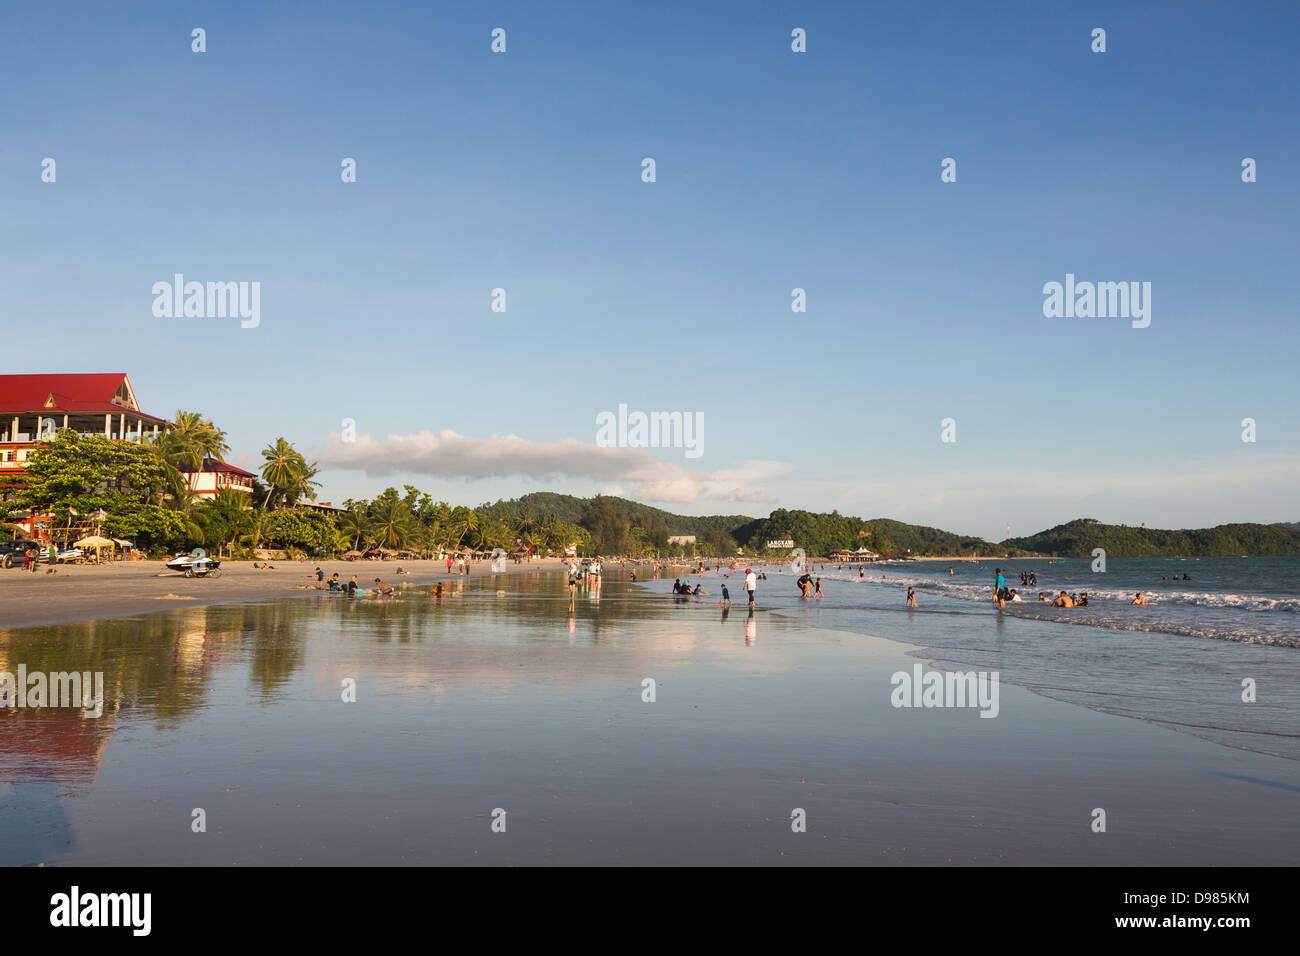 Pantai Cenang (Cenang Beach) dans l'île de Langkawi, Malaisie Banque D'Images